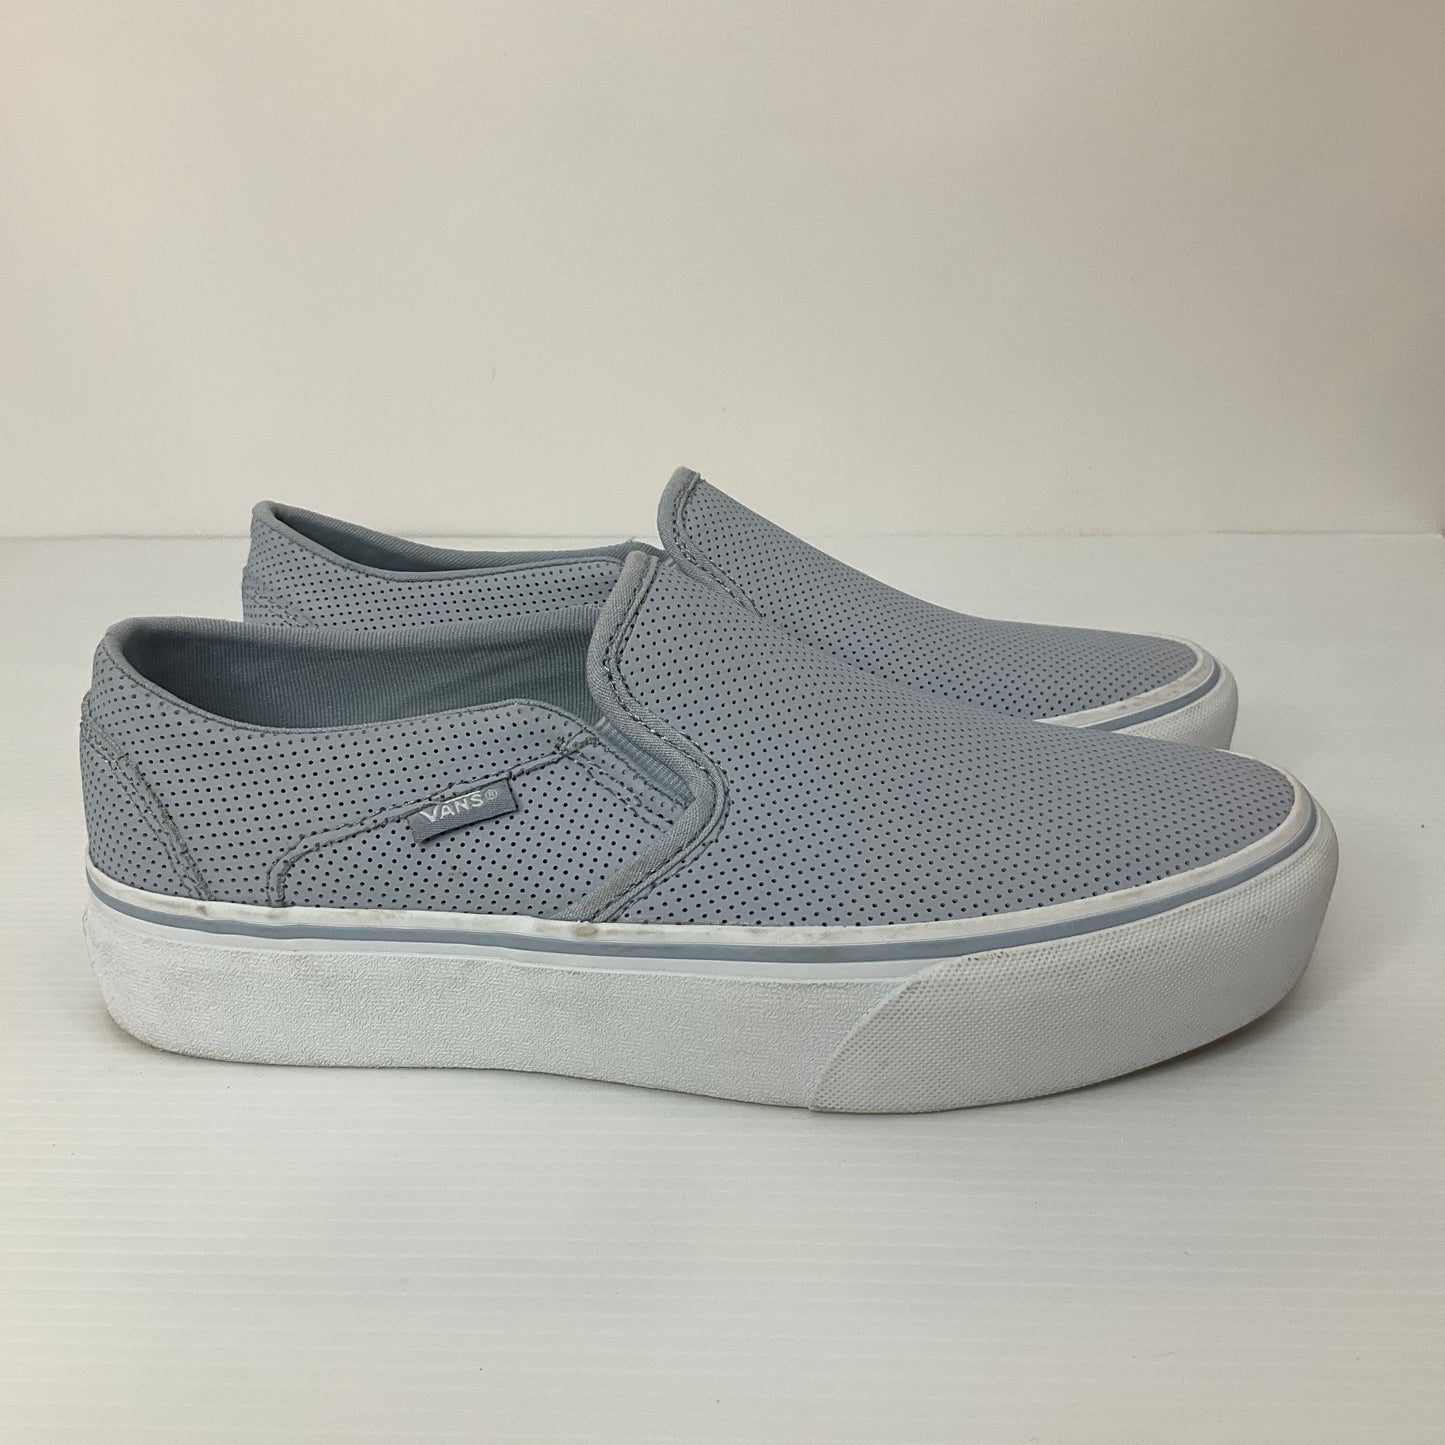 Blue Shoes Flats Vans, Size 8.5